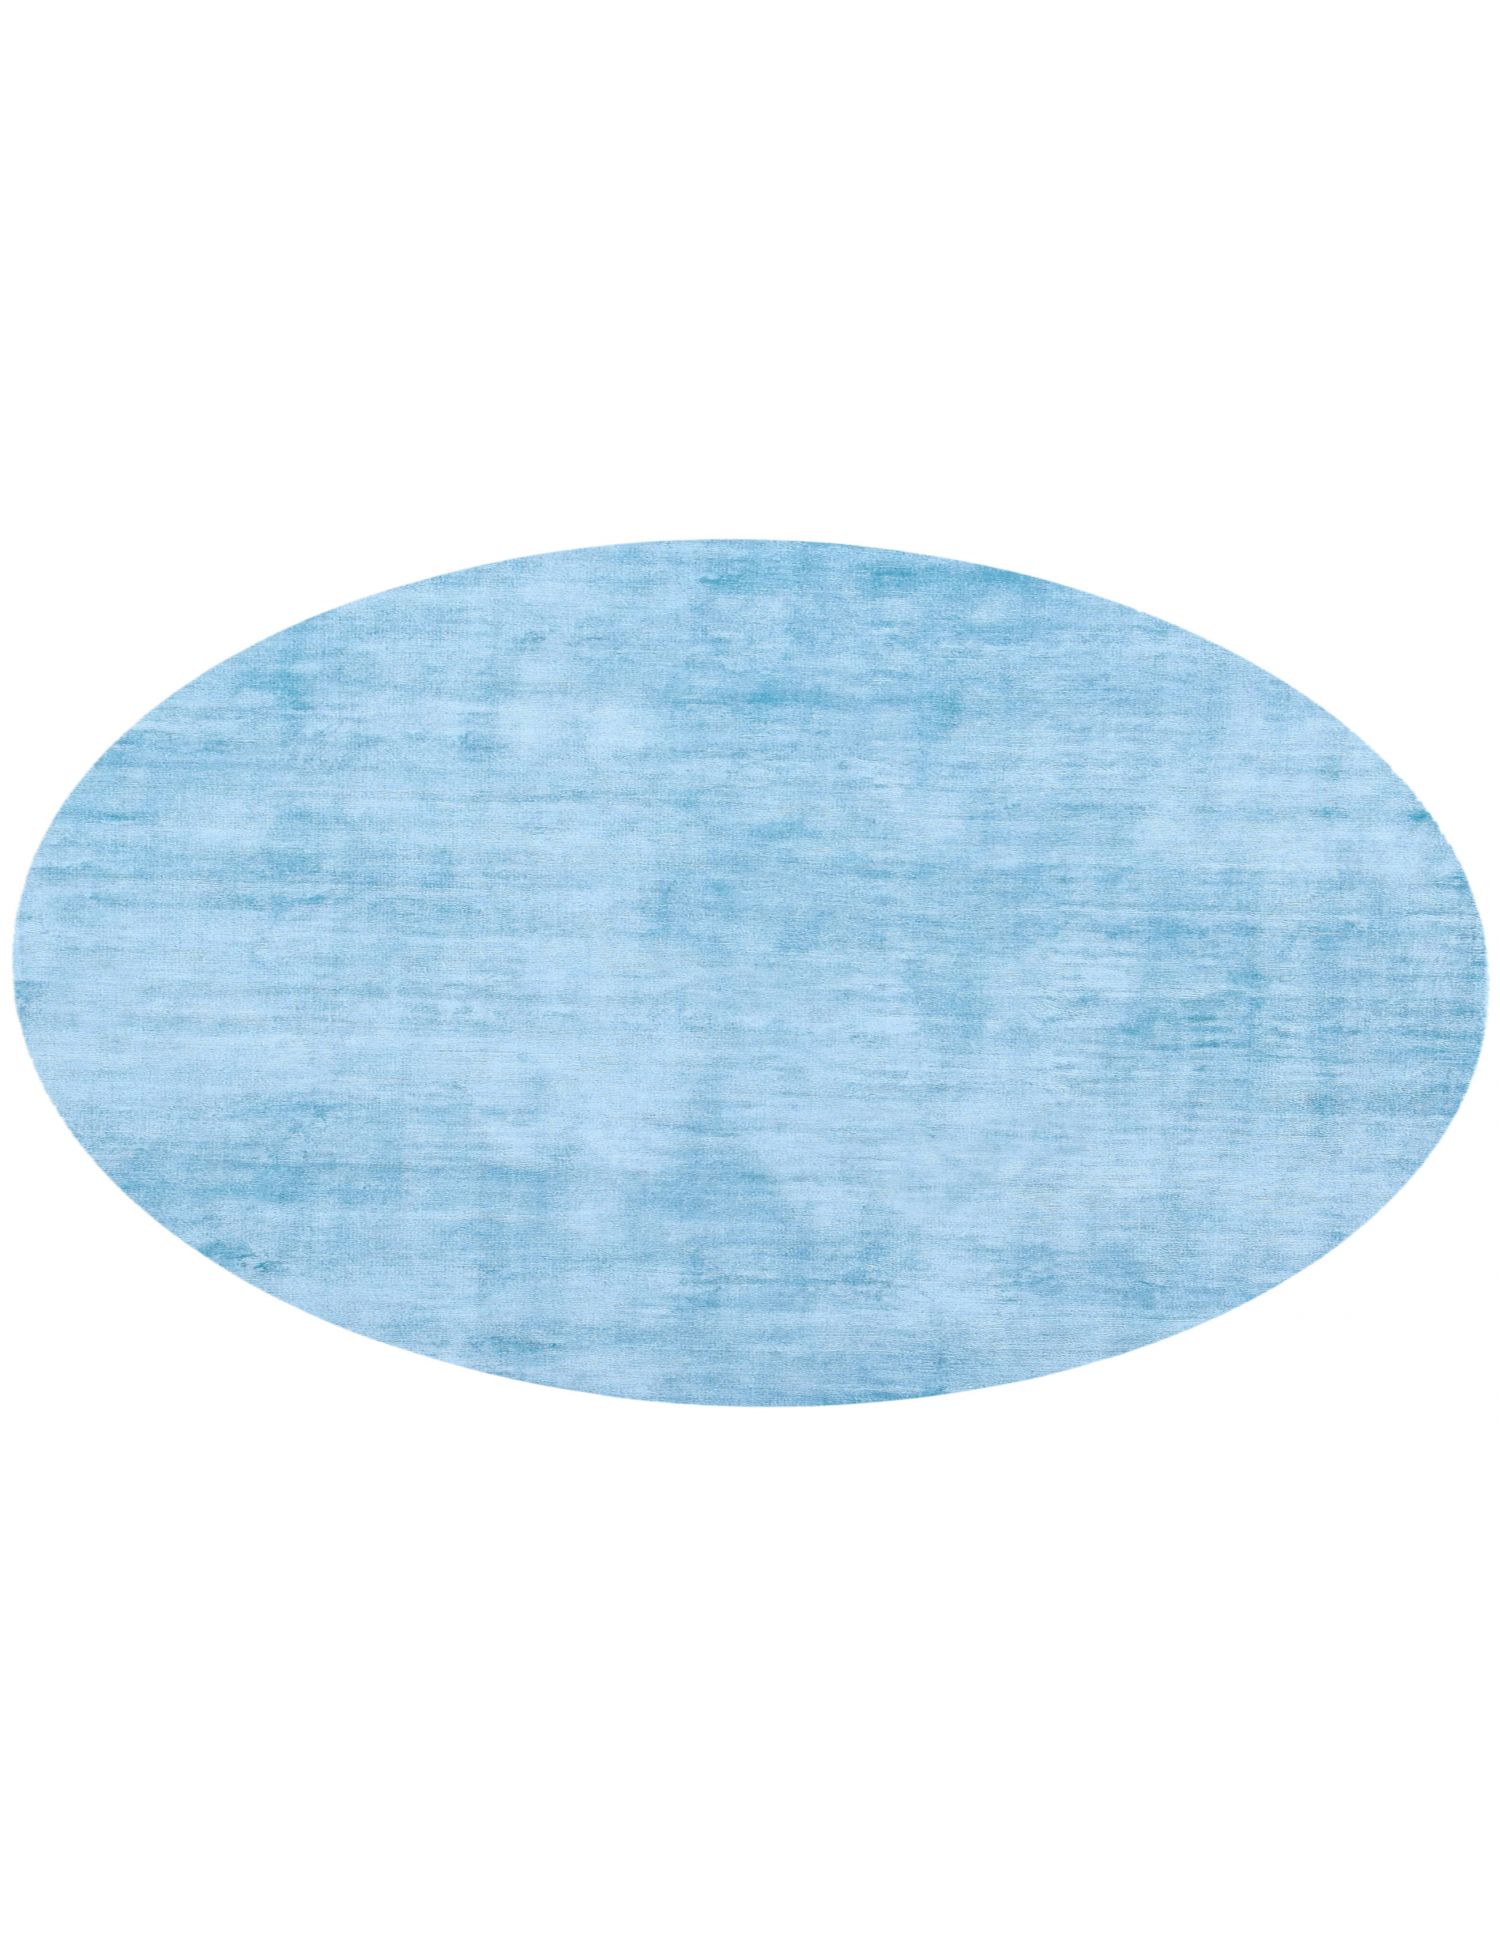 Rund Cozy  blau <br/>180 x 180 cm